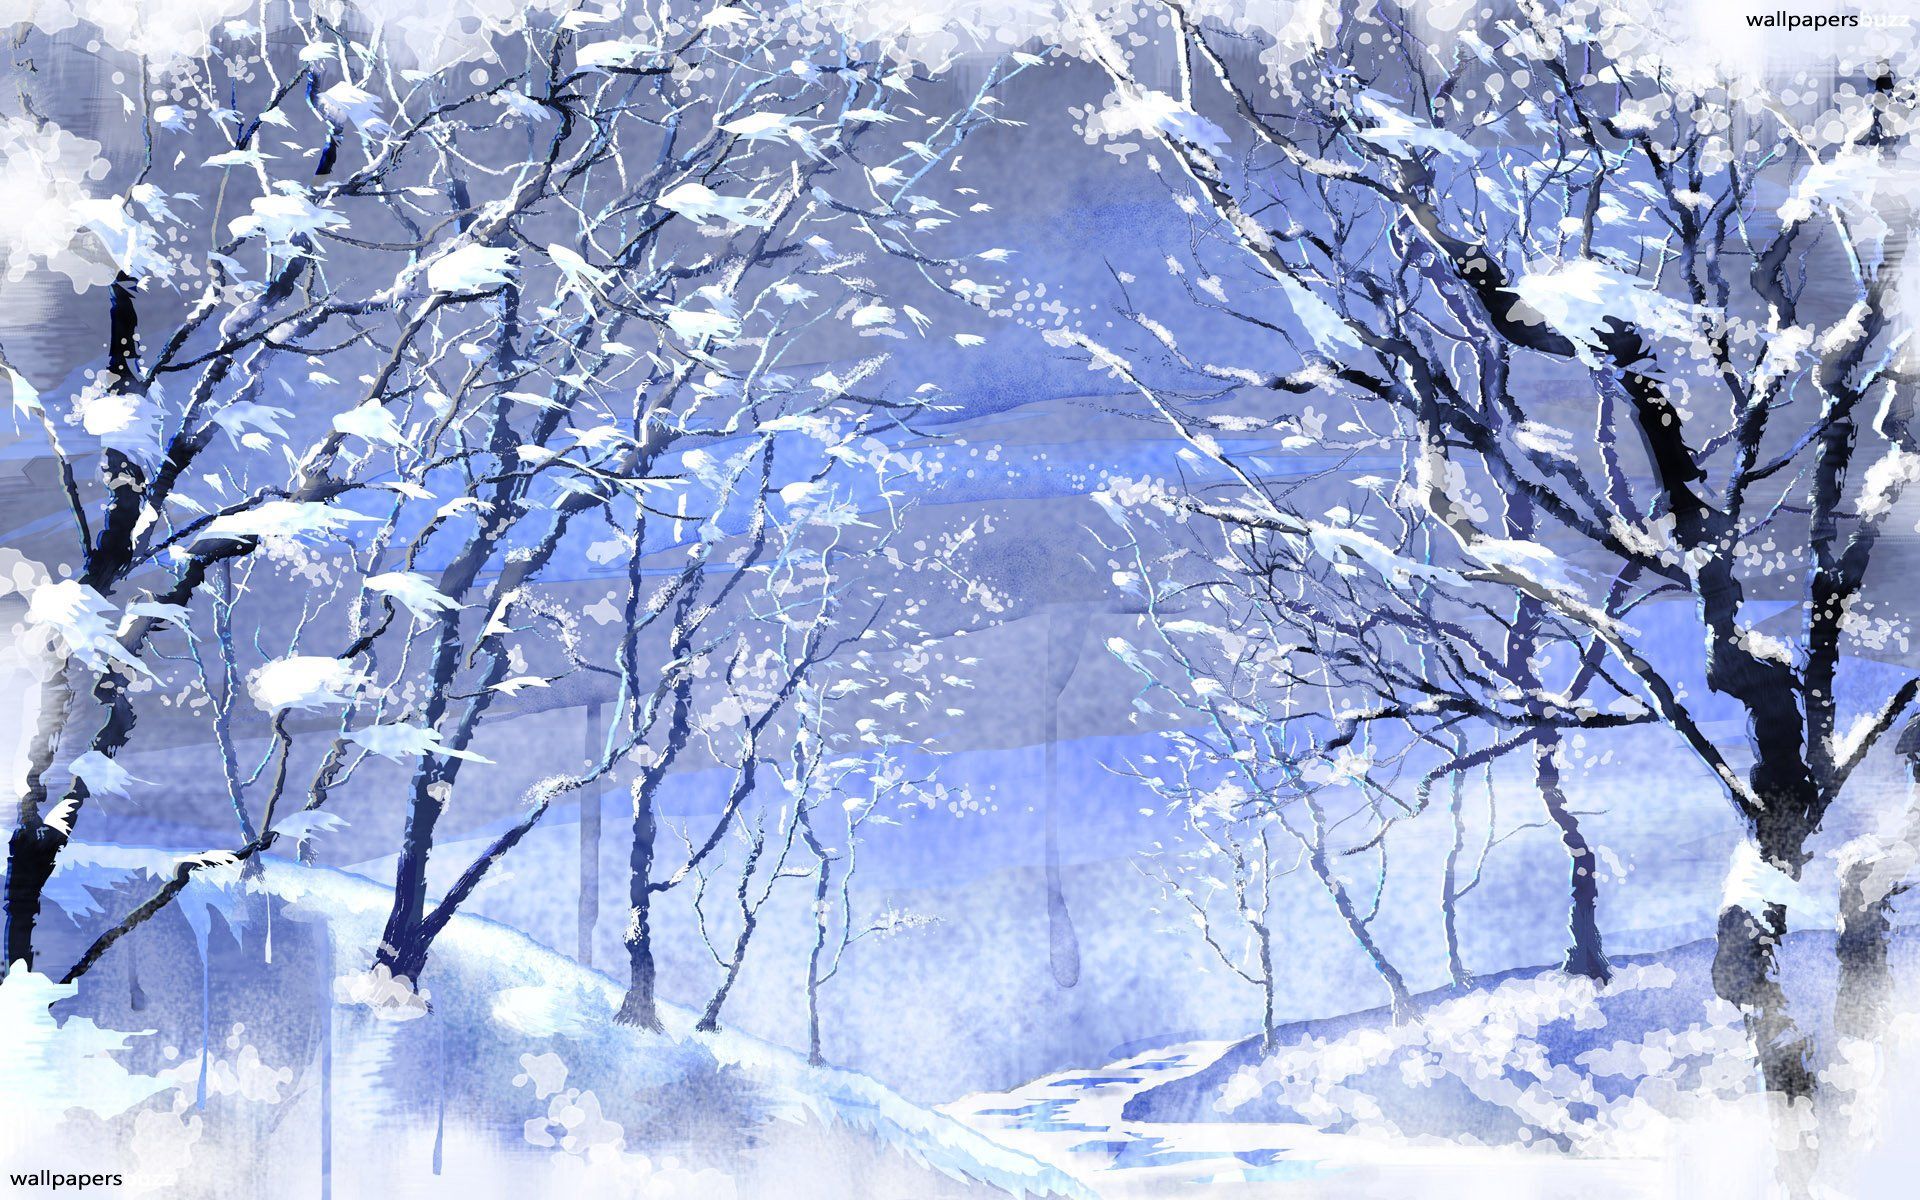 Snowy Anime Wallpaper. Winter wallpaper, Winter snow wallpaper, Winter scenery